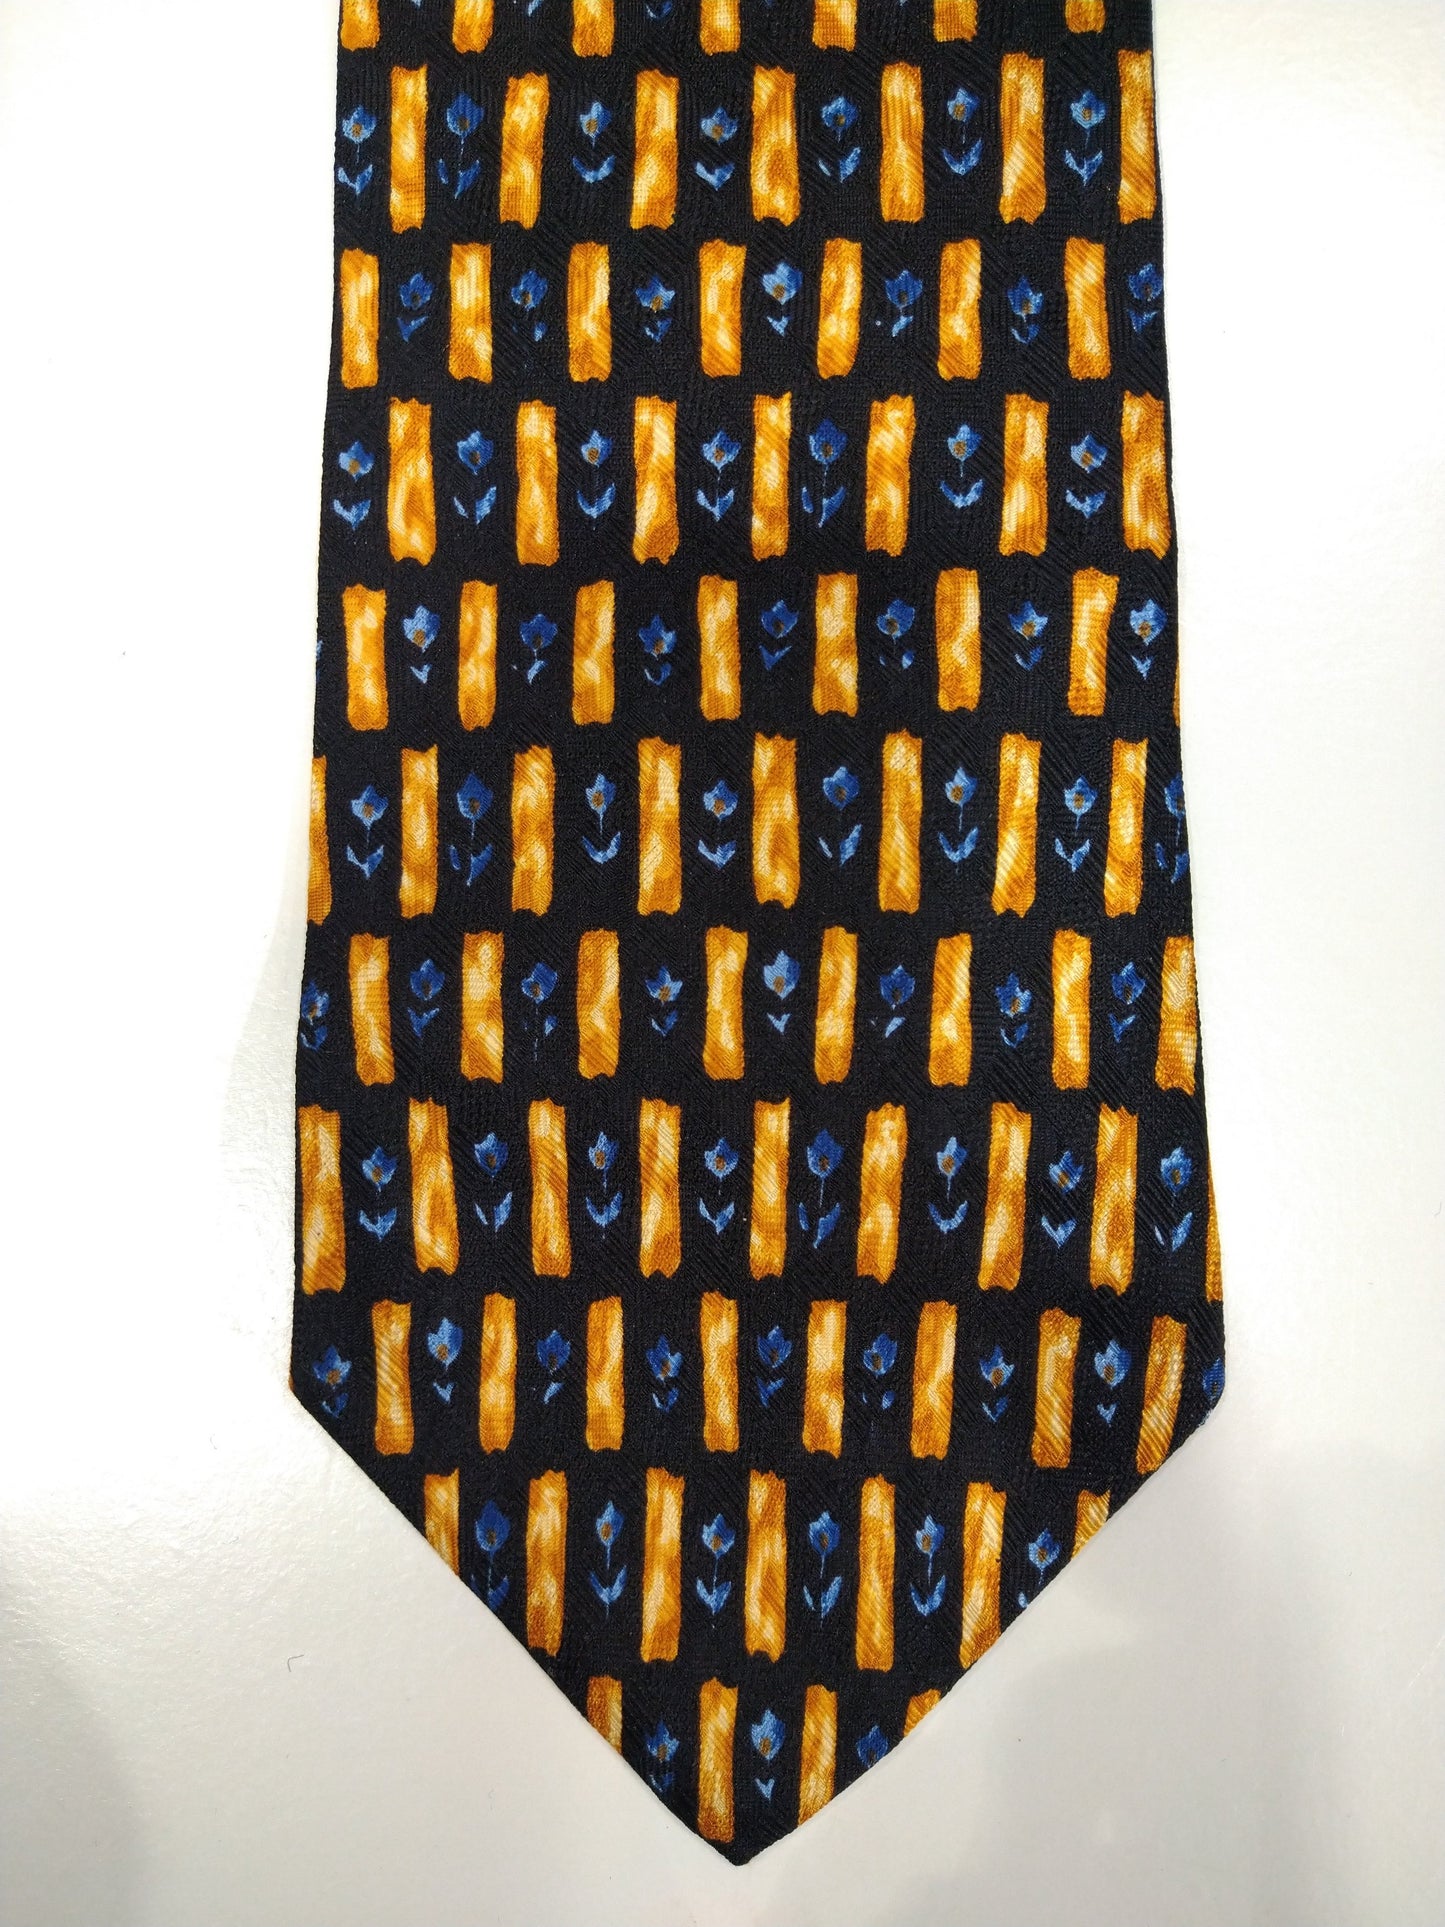 La corbata de seda de Hugo Boss vintage. Motif azul / negro / amarillo.